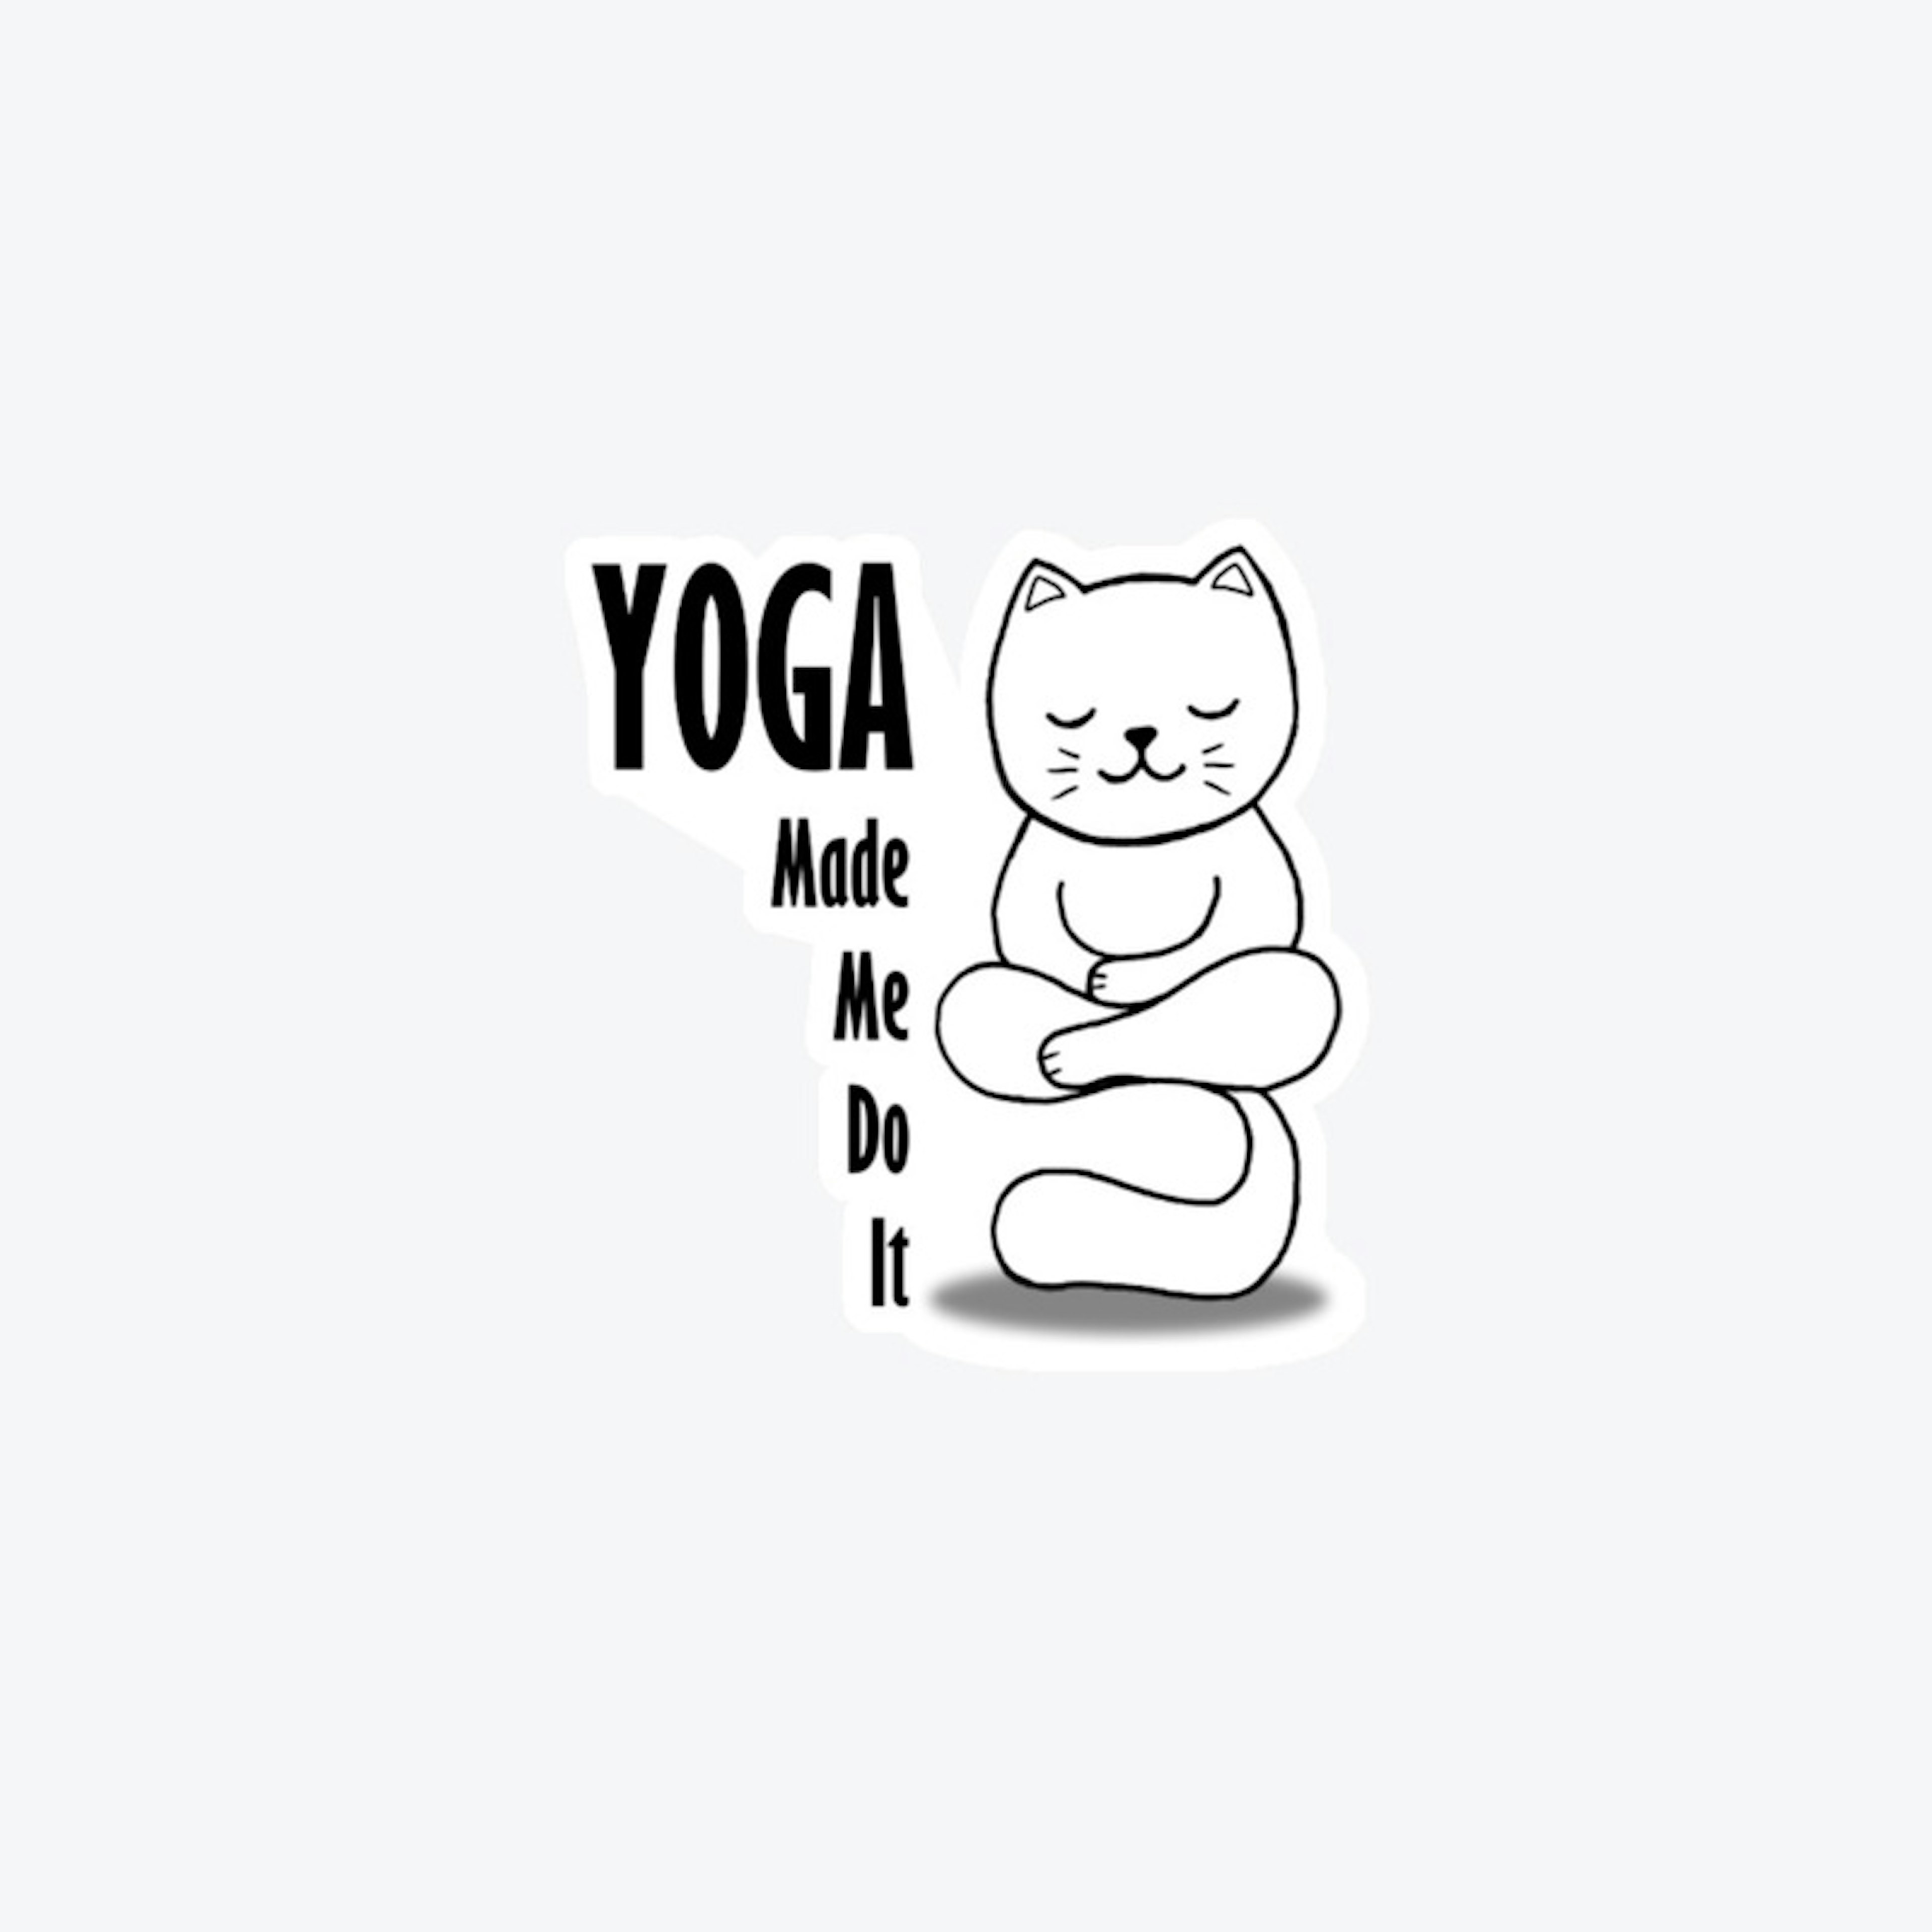 Yoga Made me do it - cat design